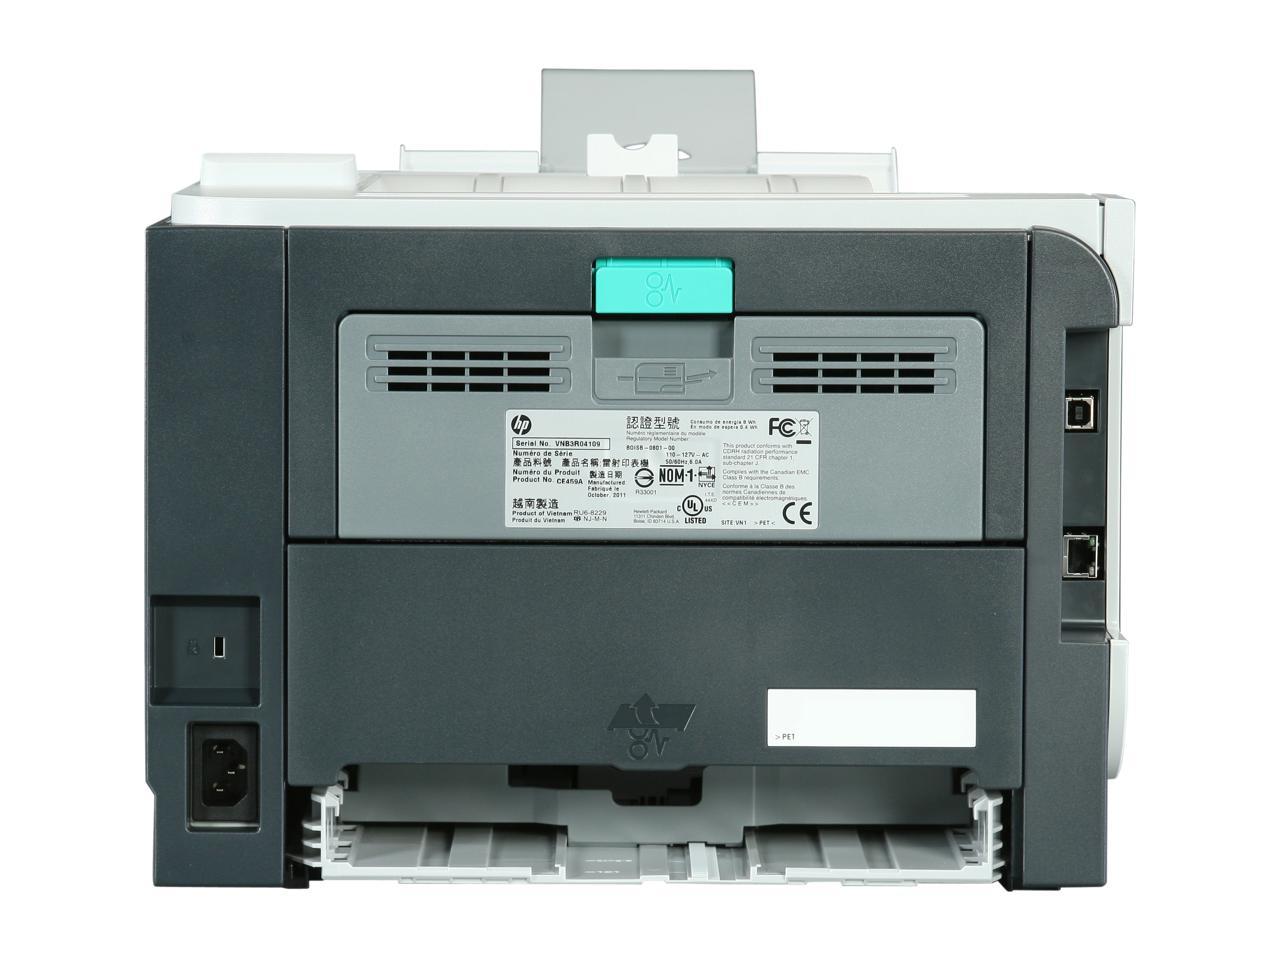 hp laserjet p2055dn printer monochrome review